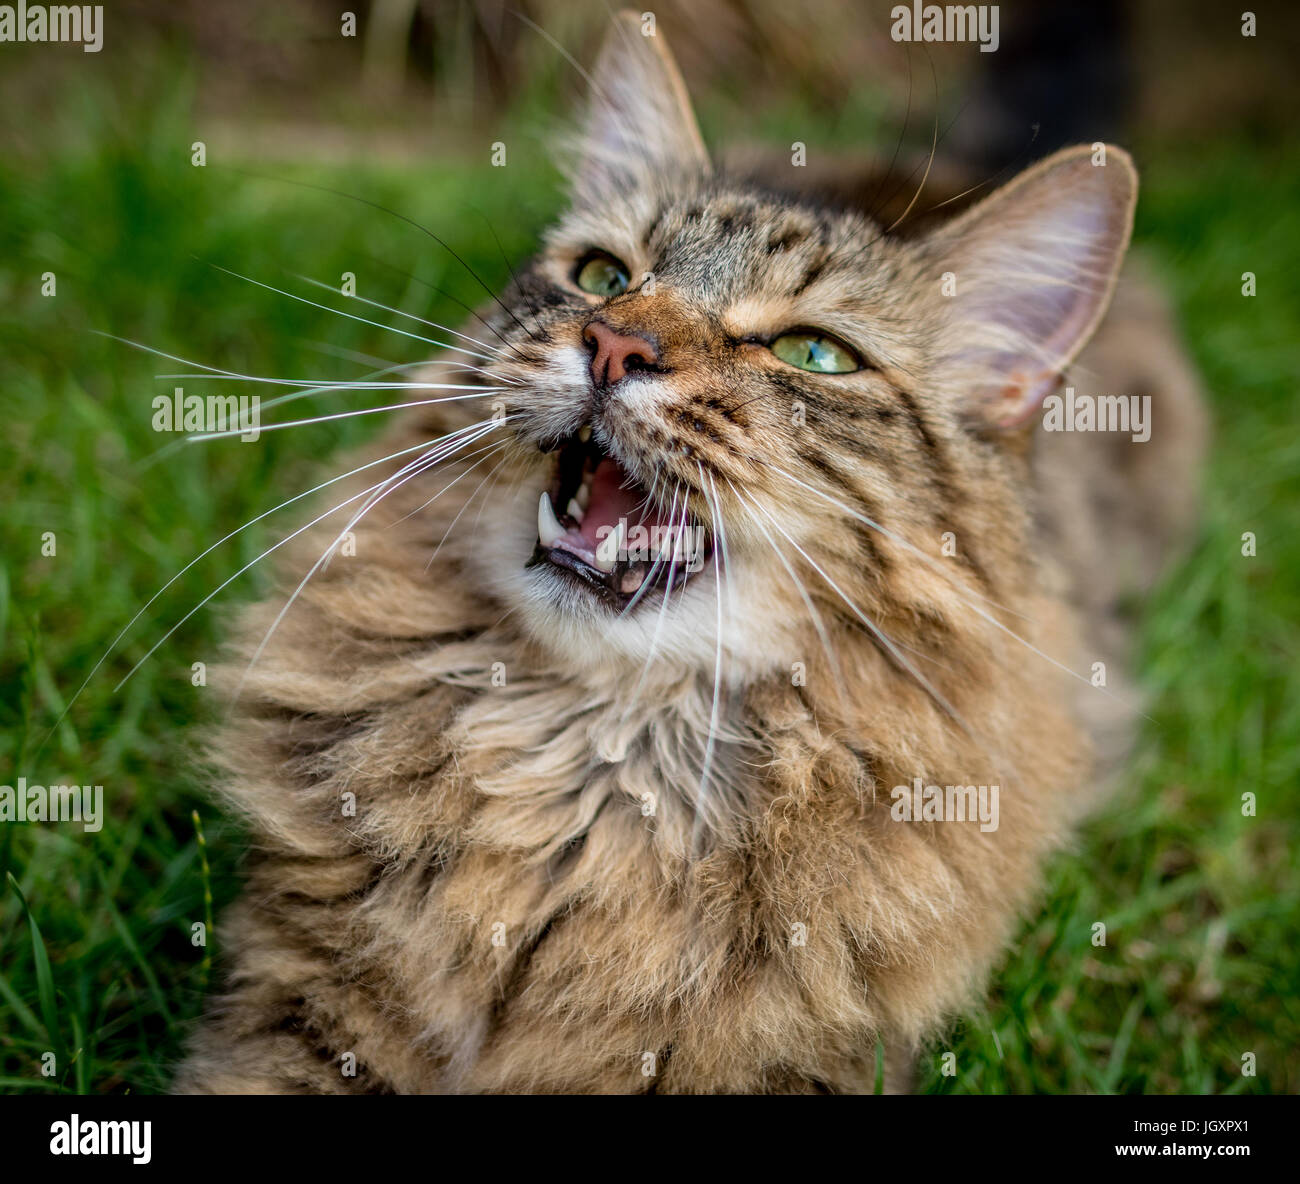 Capelli lunghi Tabby Cat posa su un prato con la bocca aperta. Foto Stock